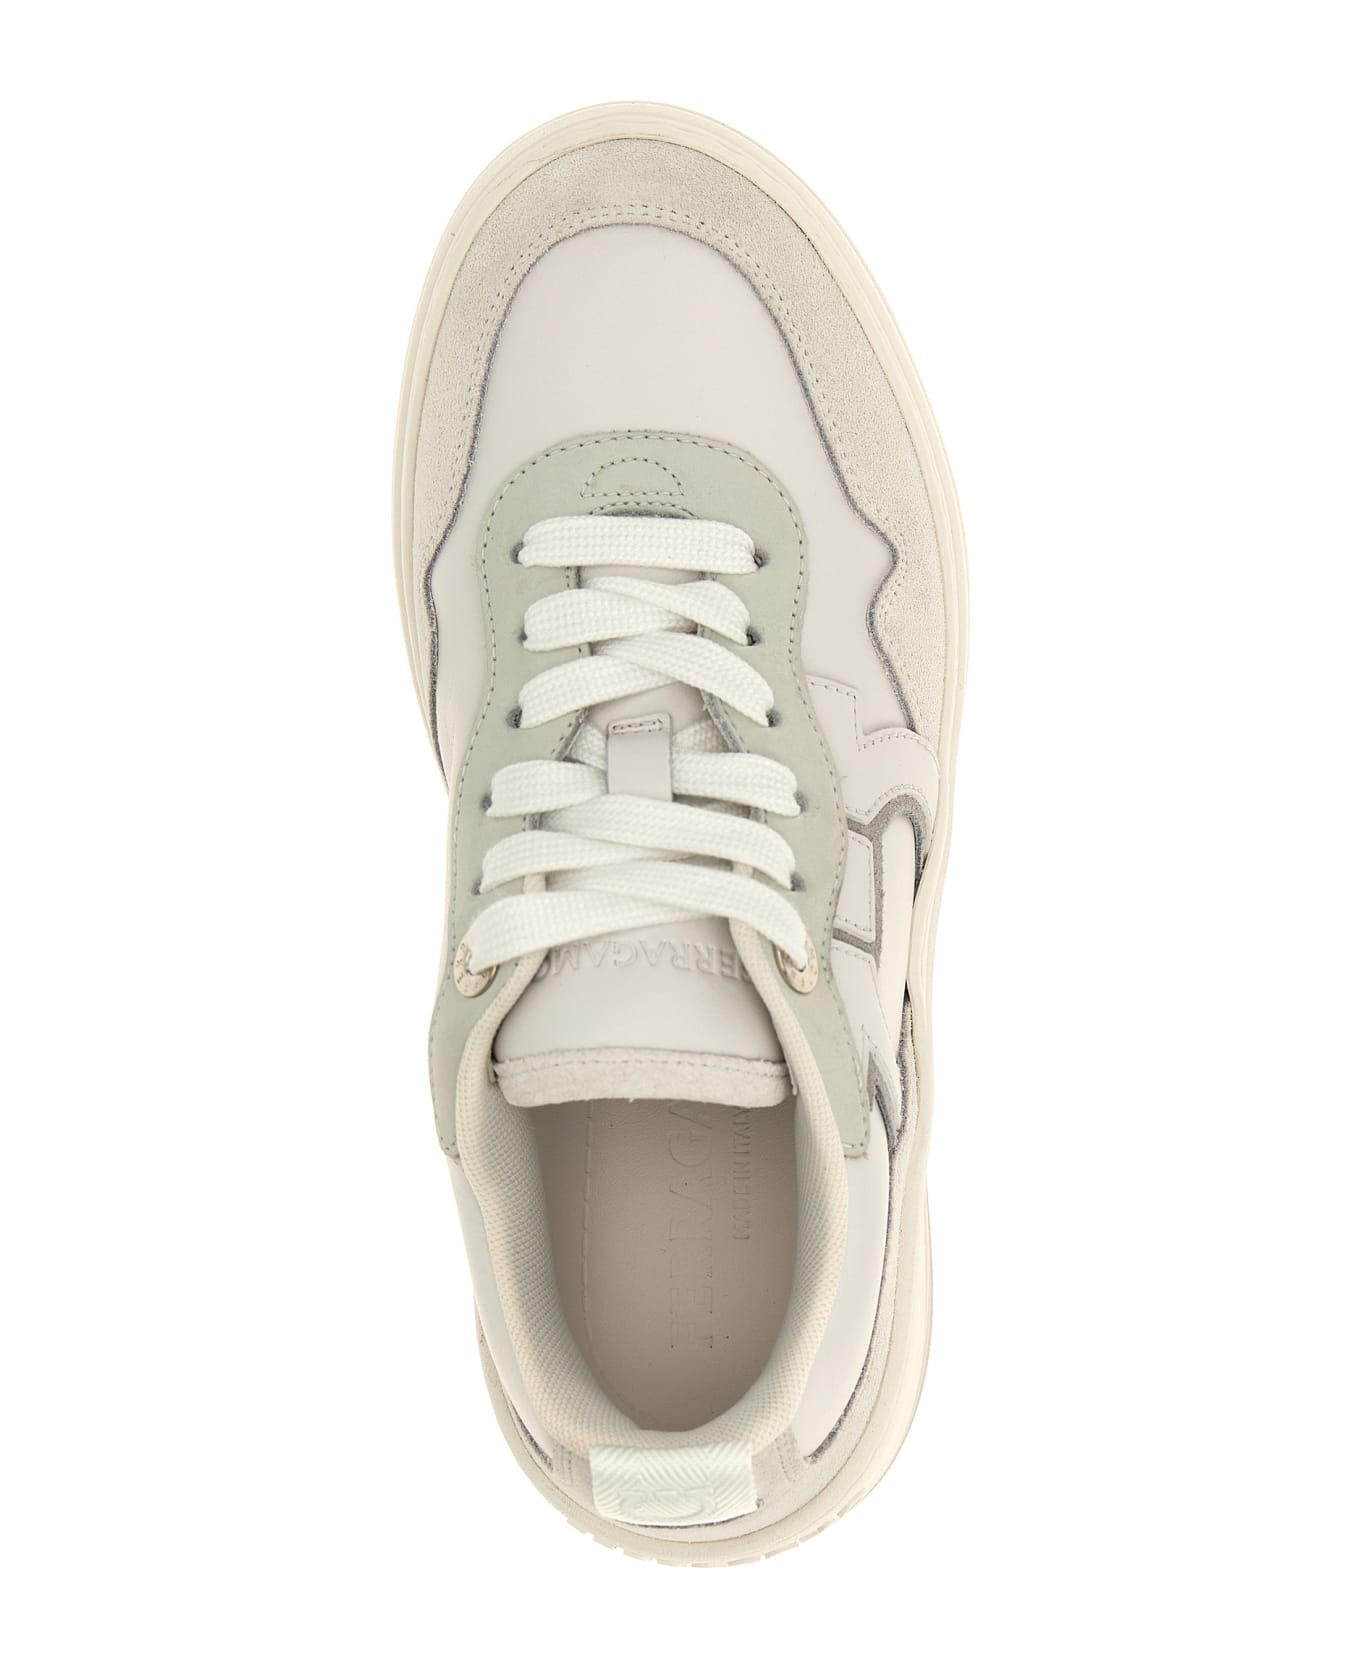 Ferragamo 'dania' Sneakers - White スニーカー